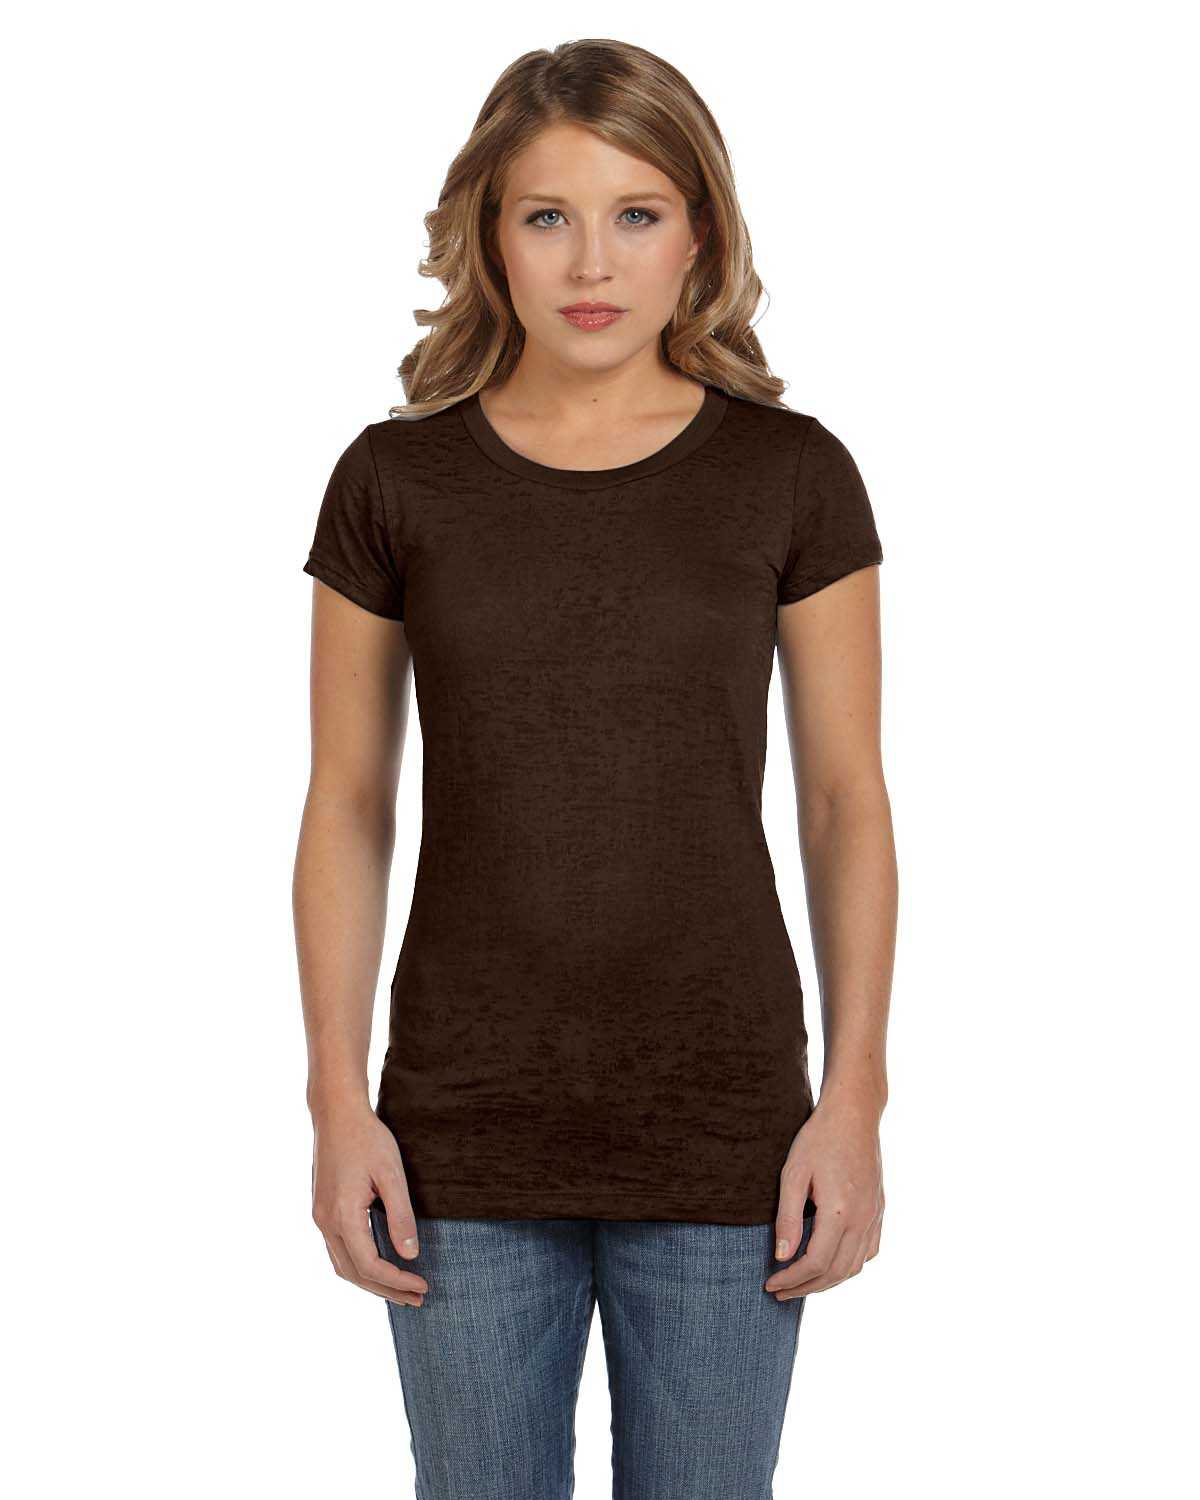 Bella + Canvas 8601 Ladies' Burnout Short-Sleeve T-Shirt ...